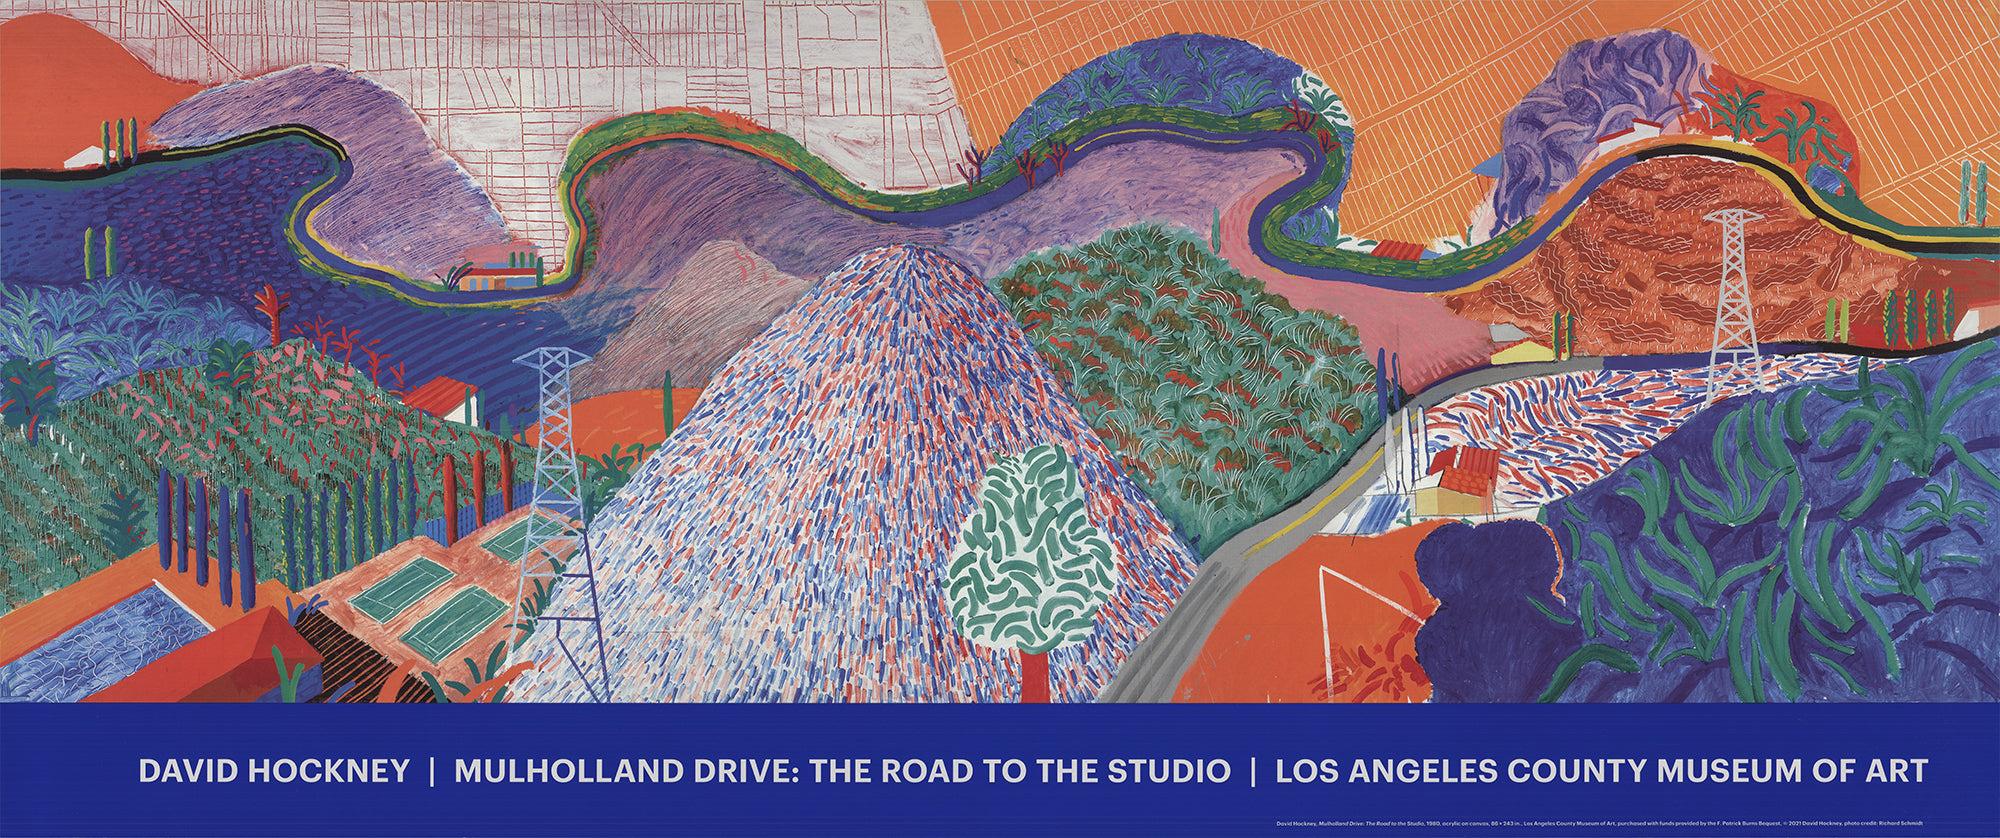 Papierformat: 16 x 38 Zoll (40,64 x 96,52 cm)
Bildgröße: 13,5 x 38 Zoll (34,29 x 96,52 cm)
Gerahmt: Nein
Zustand: A: Neuwertig

Zusätzliche Details: Eines von Hockneys berühmtesten Bildern - "Mulholland Drive: Der Weg zum Studio". Ausstellungsplakat